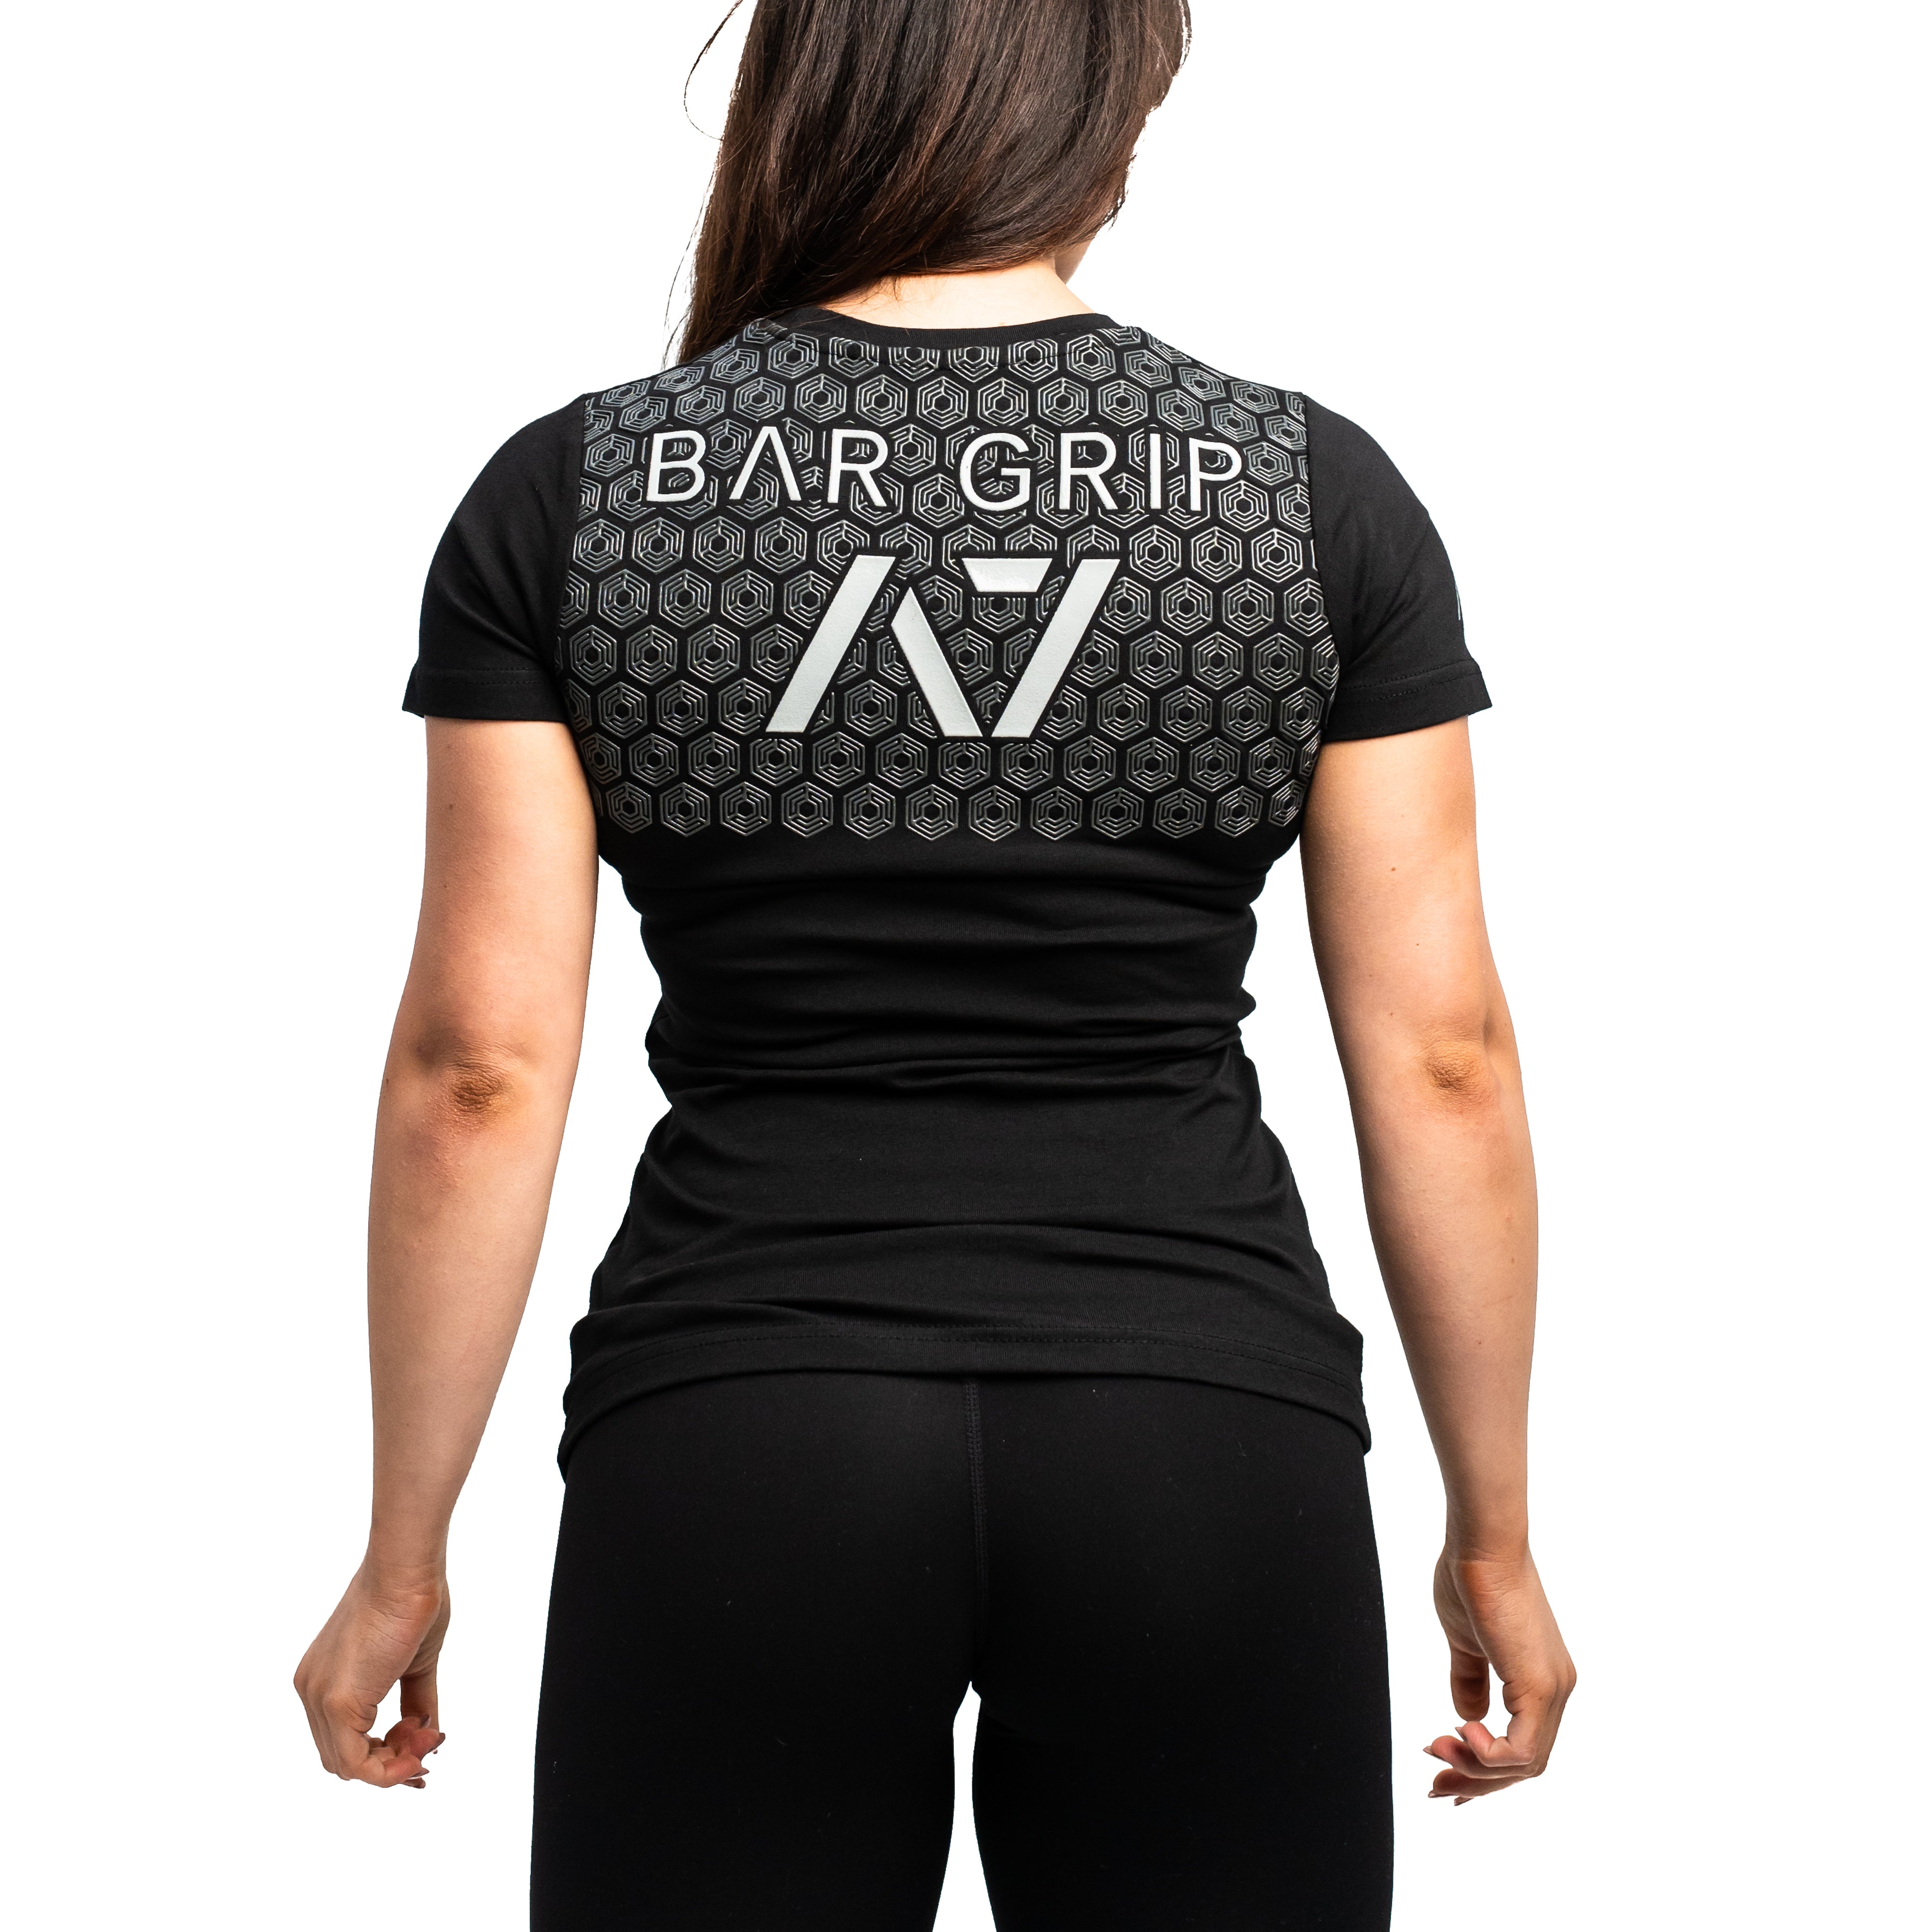 Arnold 22 Bar Grip Women's Shirt